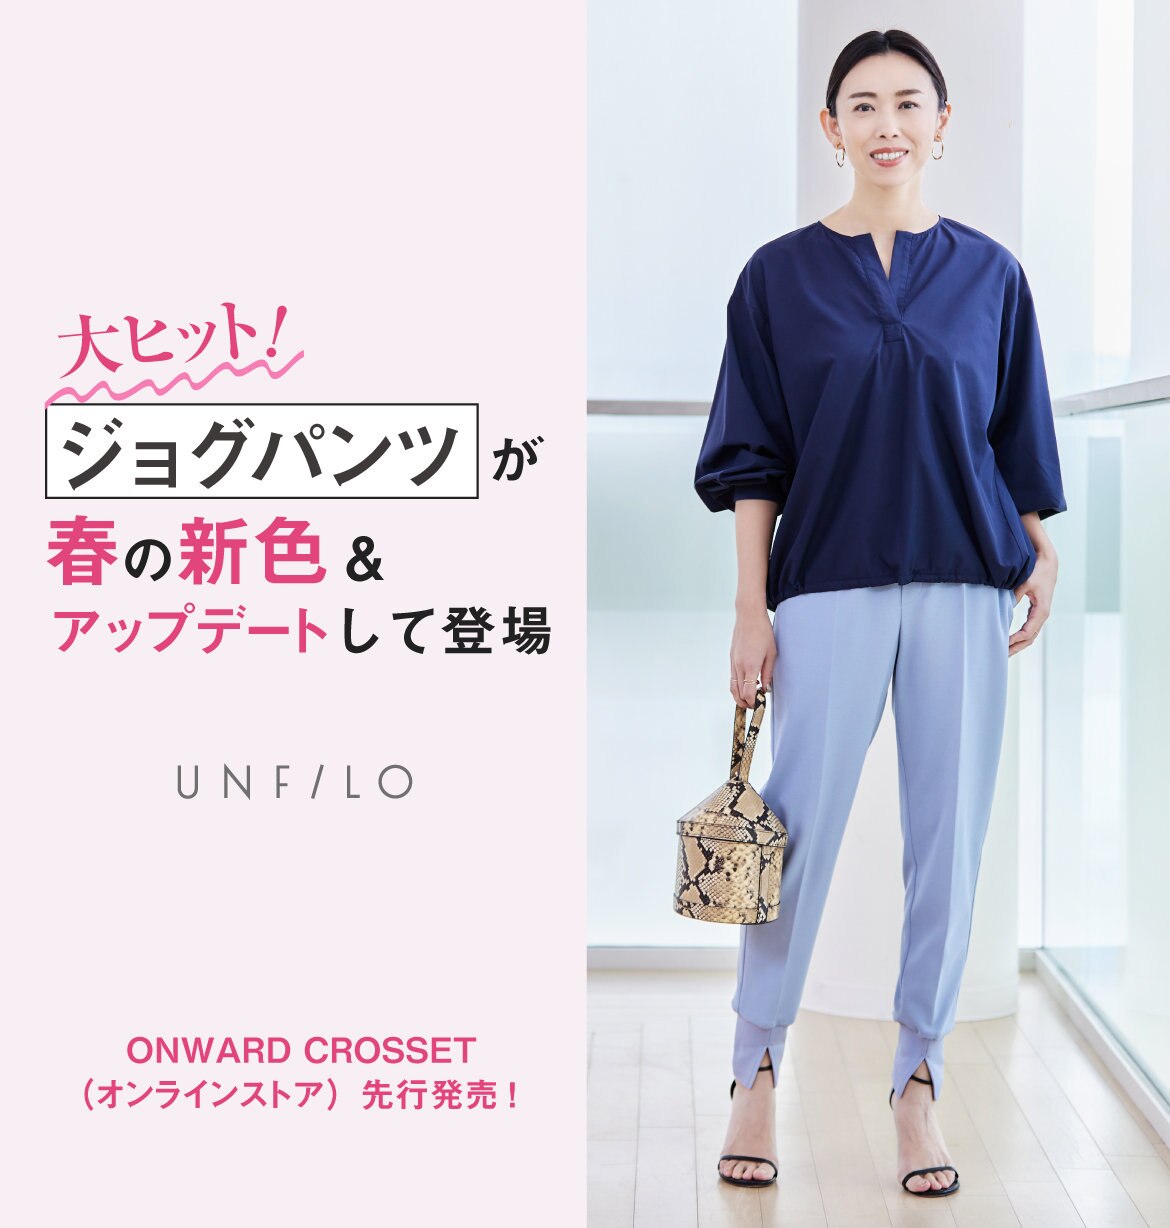 公式 Unfilo ファッション通販サイト オンワード クローゼット